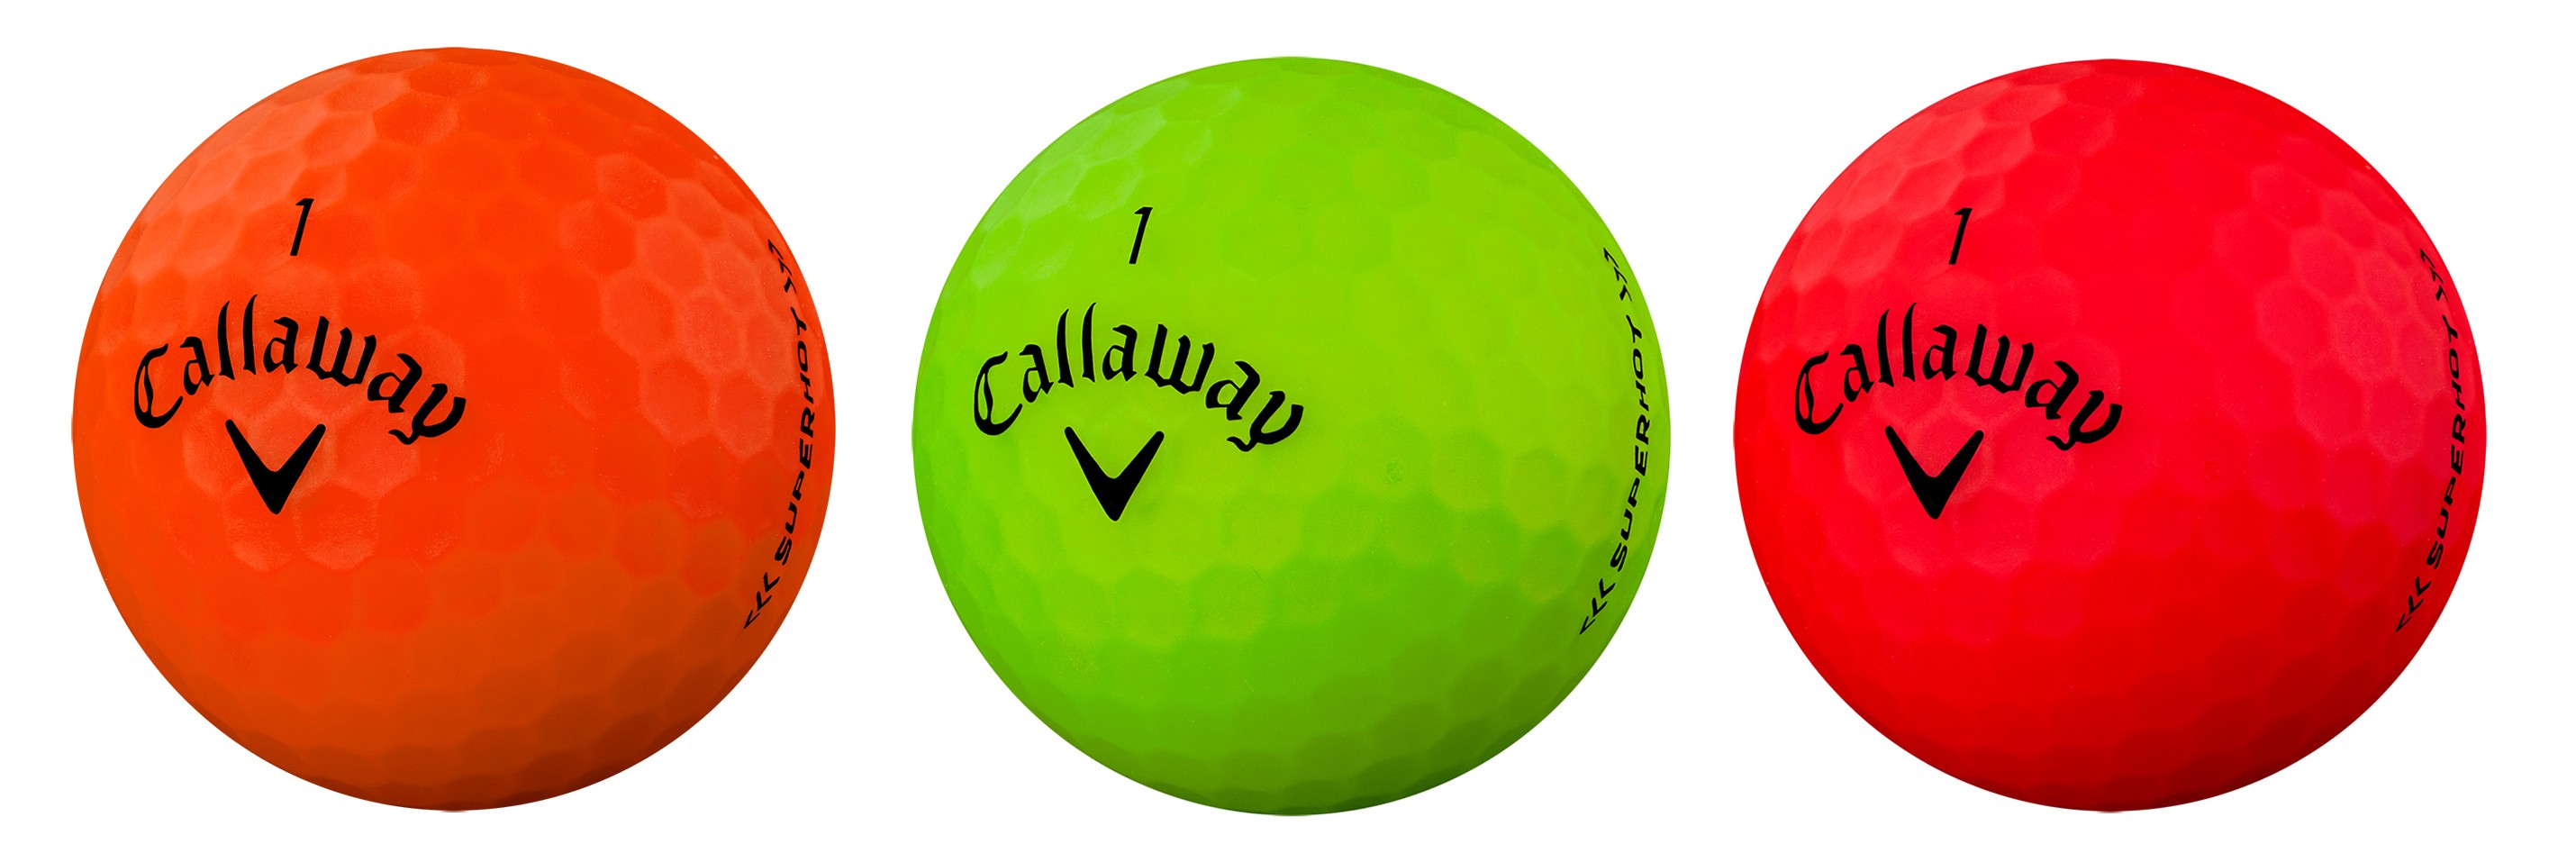 Mount Bank Oneerlijkheid Heer Callaway Chrome Soft bal met 'grafeen' | Golfersmagazine